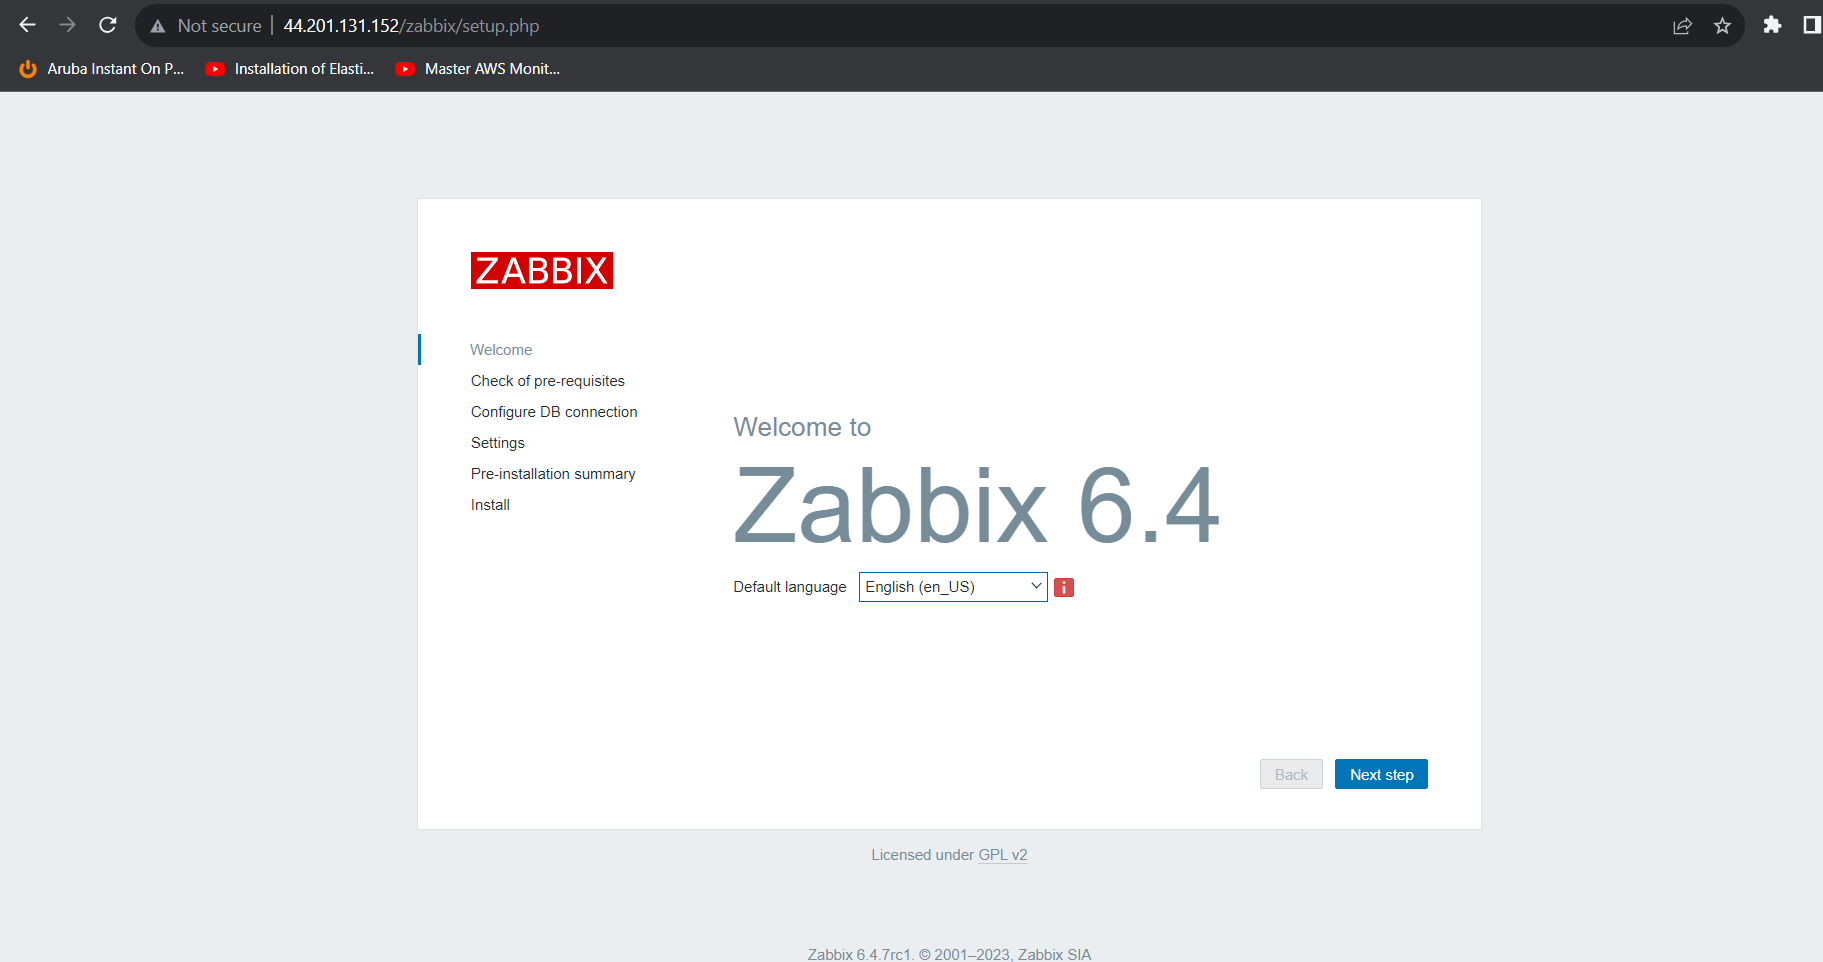 Image of Zabbix 6.4